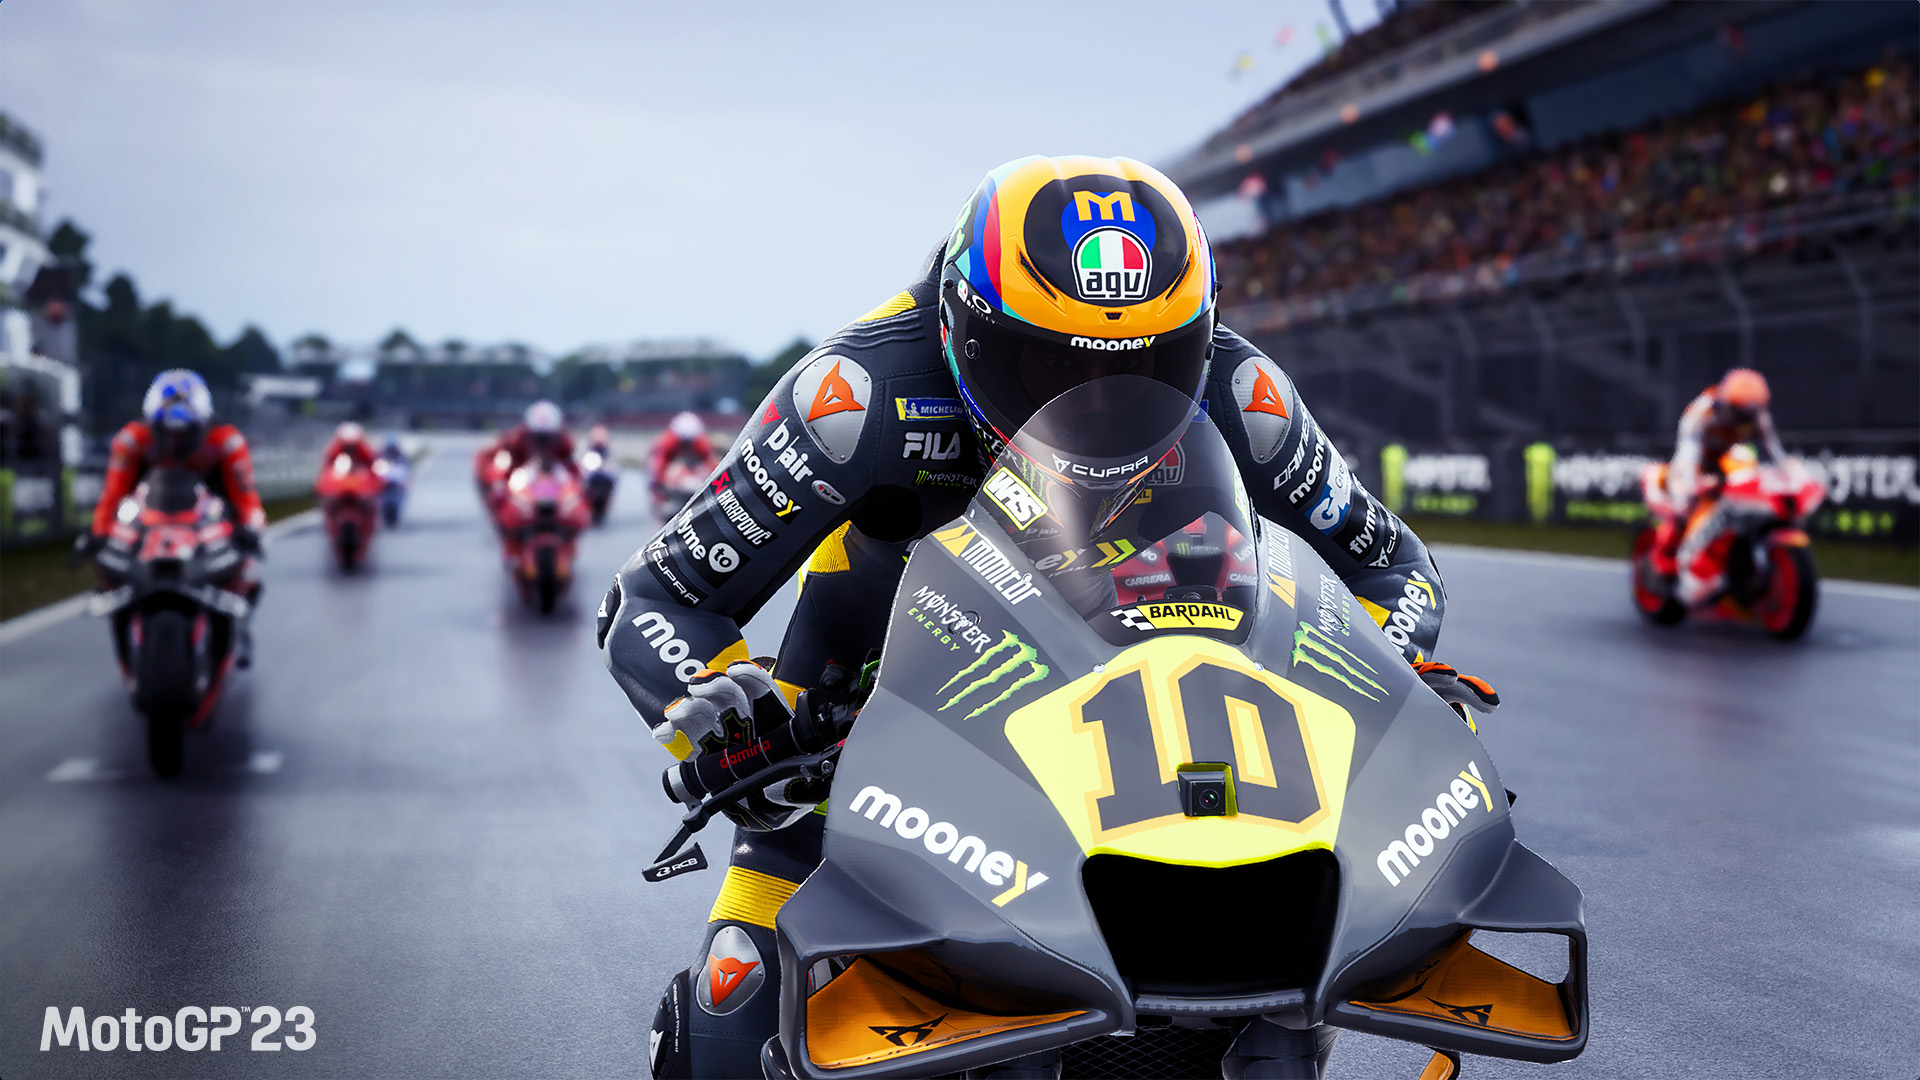 MotoGP 23, nueva entrega de la saga de Milestone, confirma su fecha de lanzamiento | Hobby Consolas